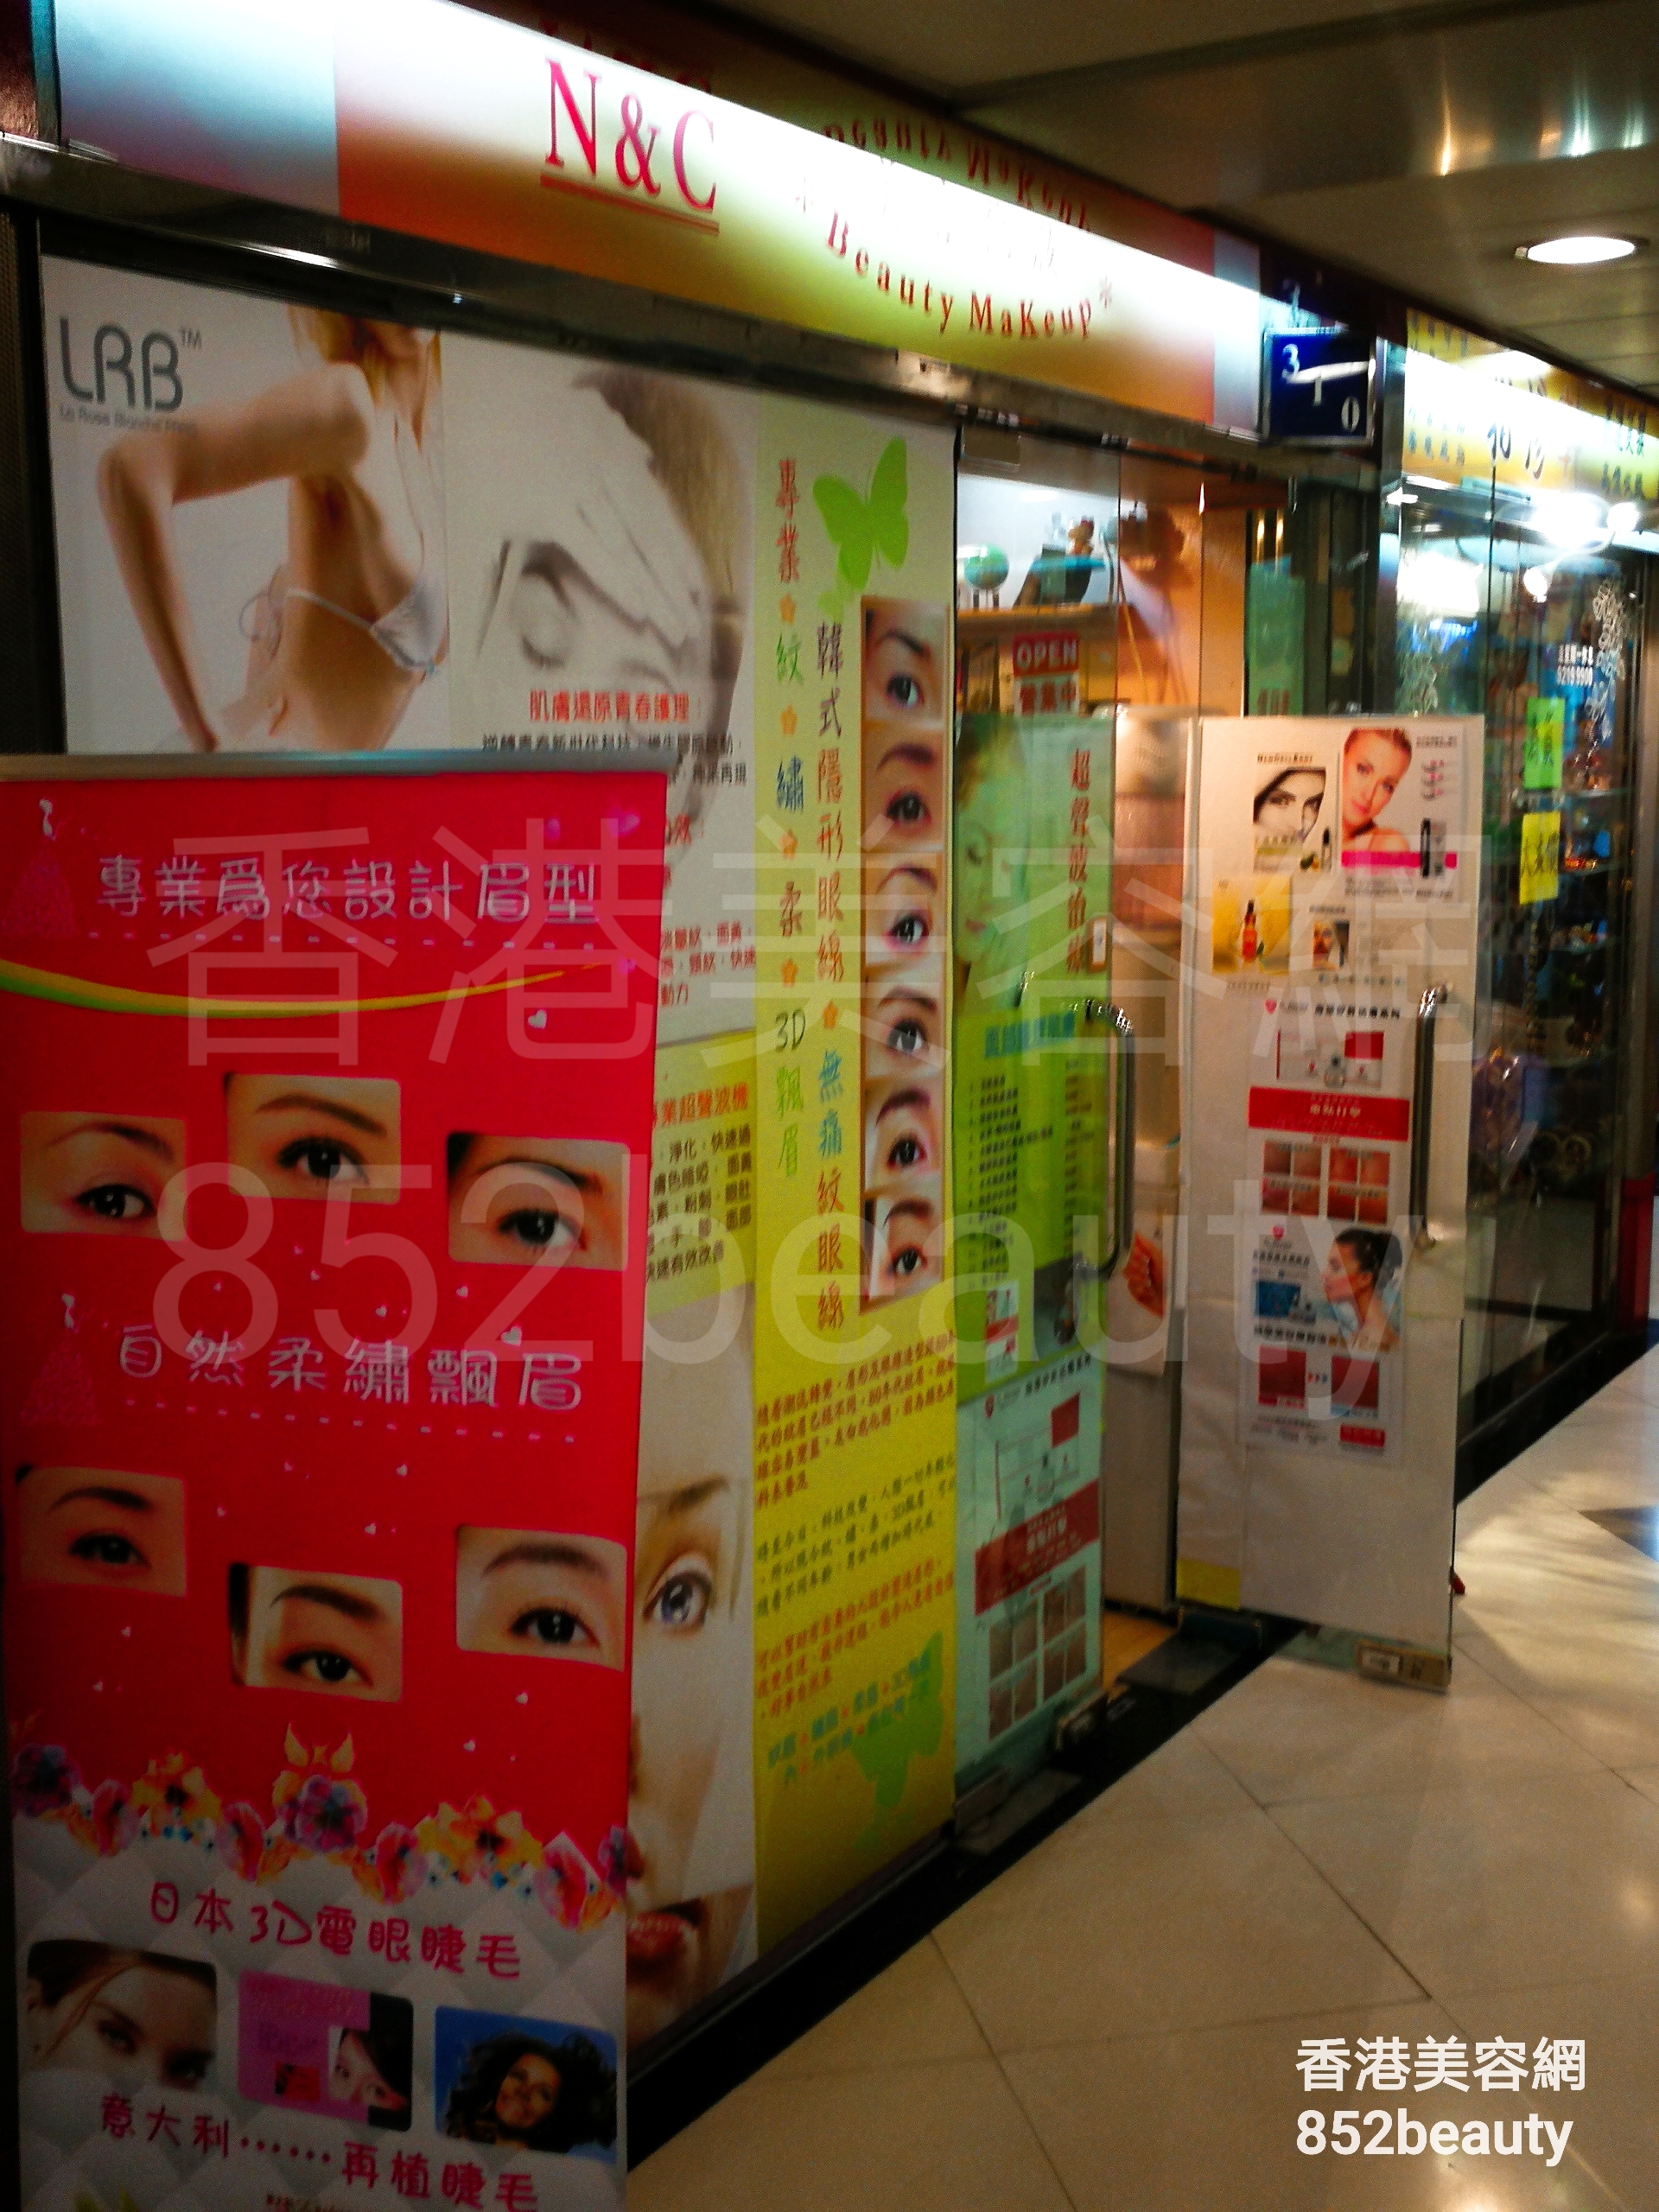 香港美容網 Hong Kong Beauty Salon 美容院 / 美容師: N&C Beauty MaKeup